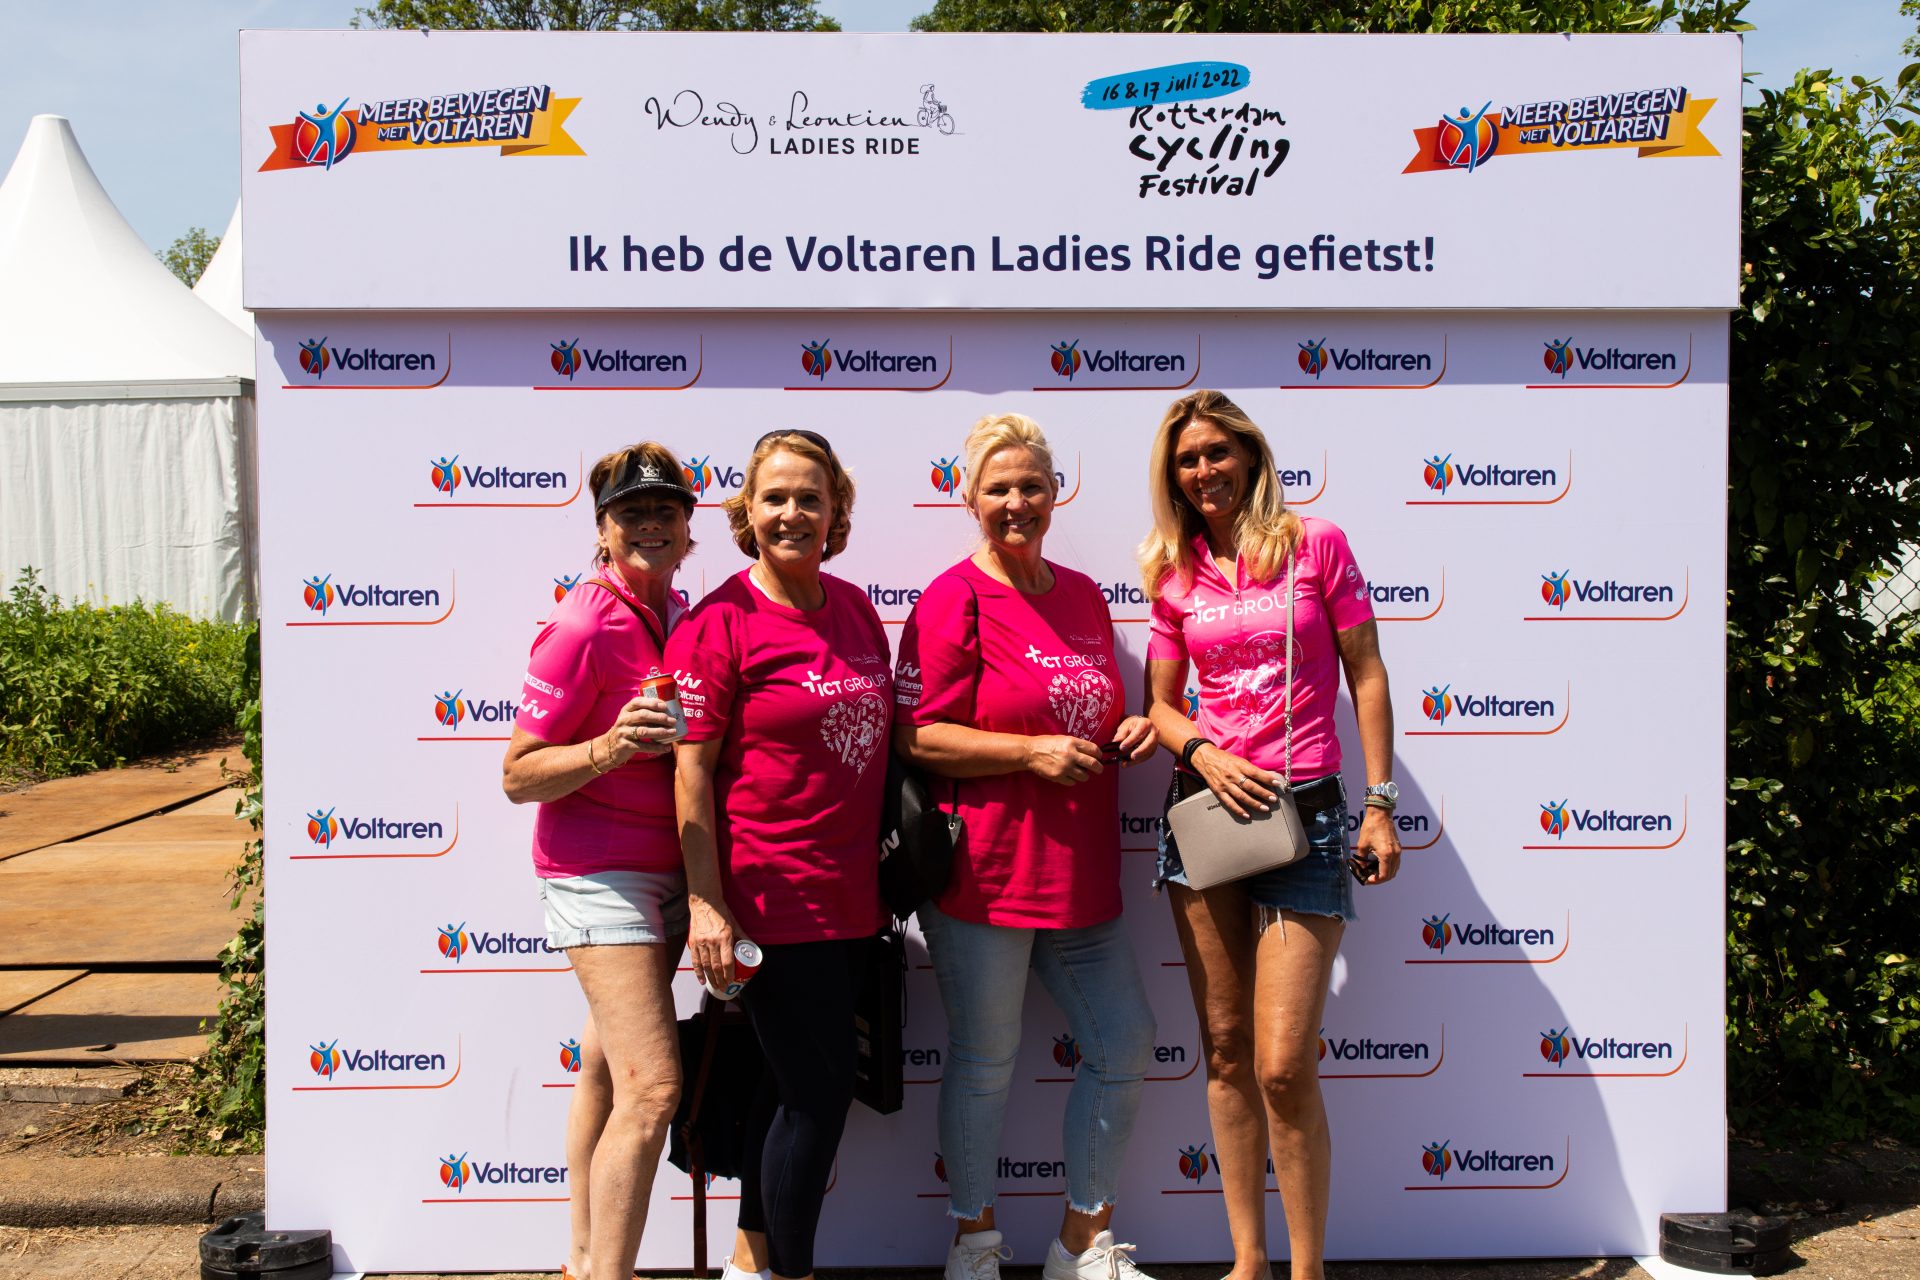 LADIES RIDE VOLTAREN BACKGROUND PHOTOS 52 of 64 Ladies Ride 2022